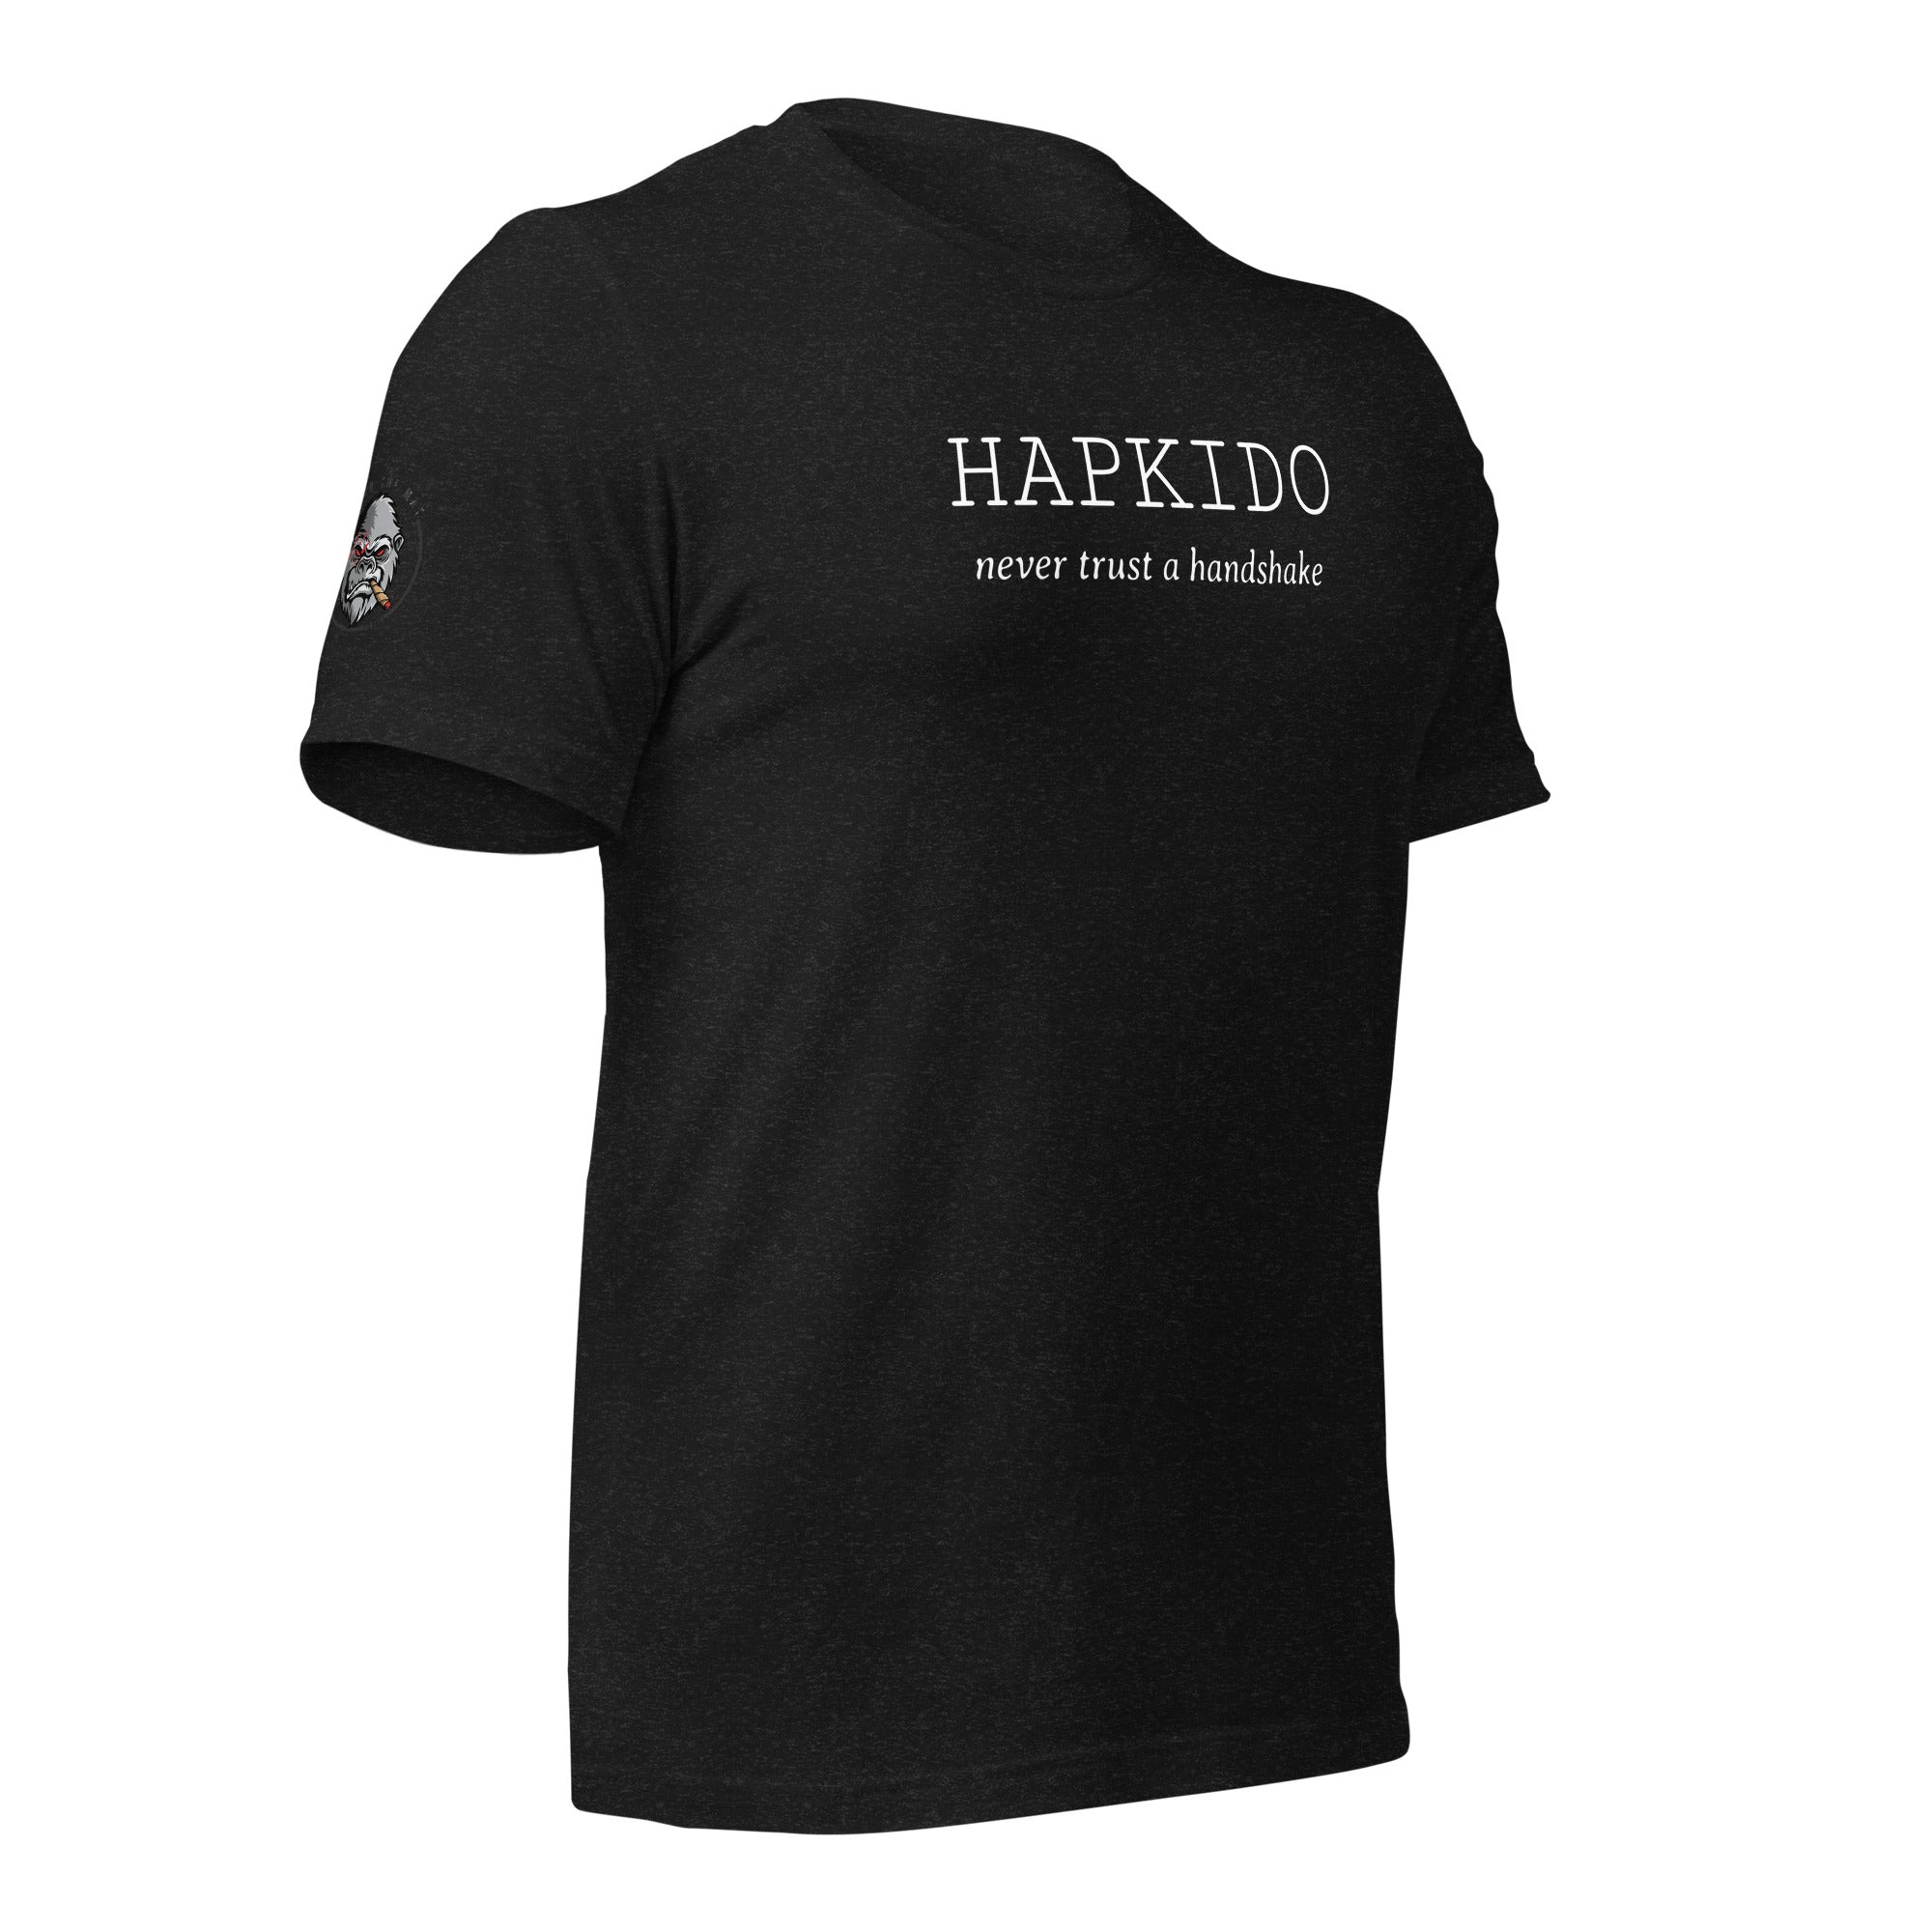 Hapkido Handshake T-shirt